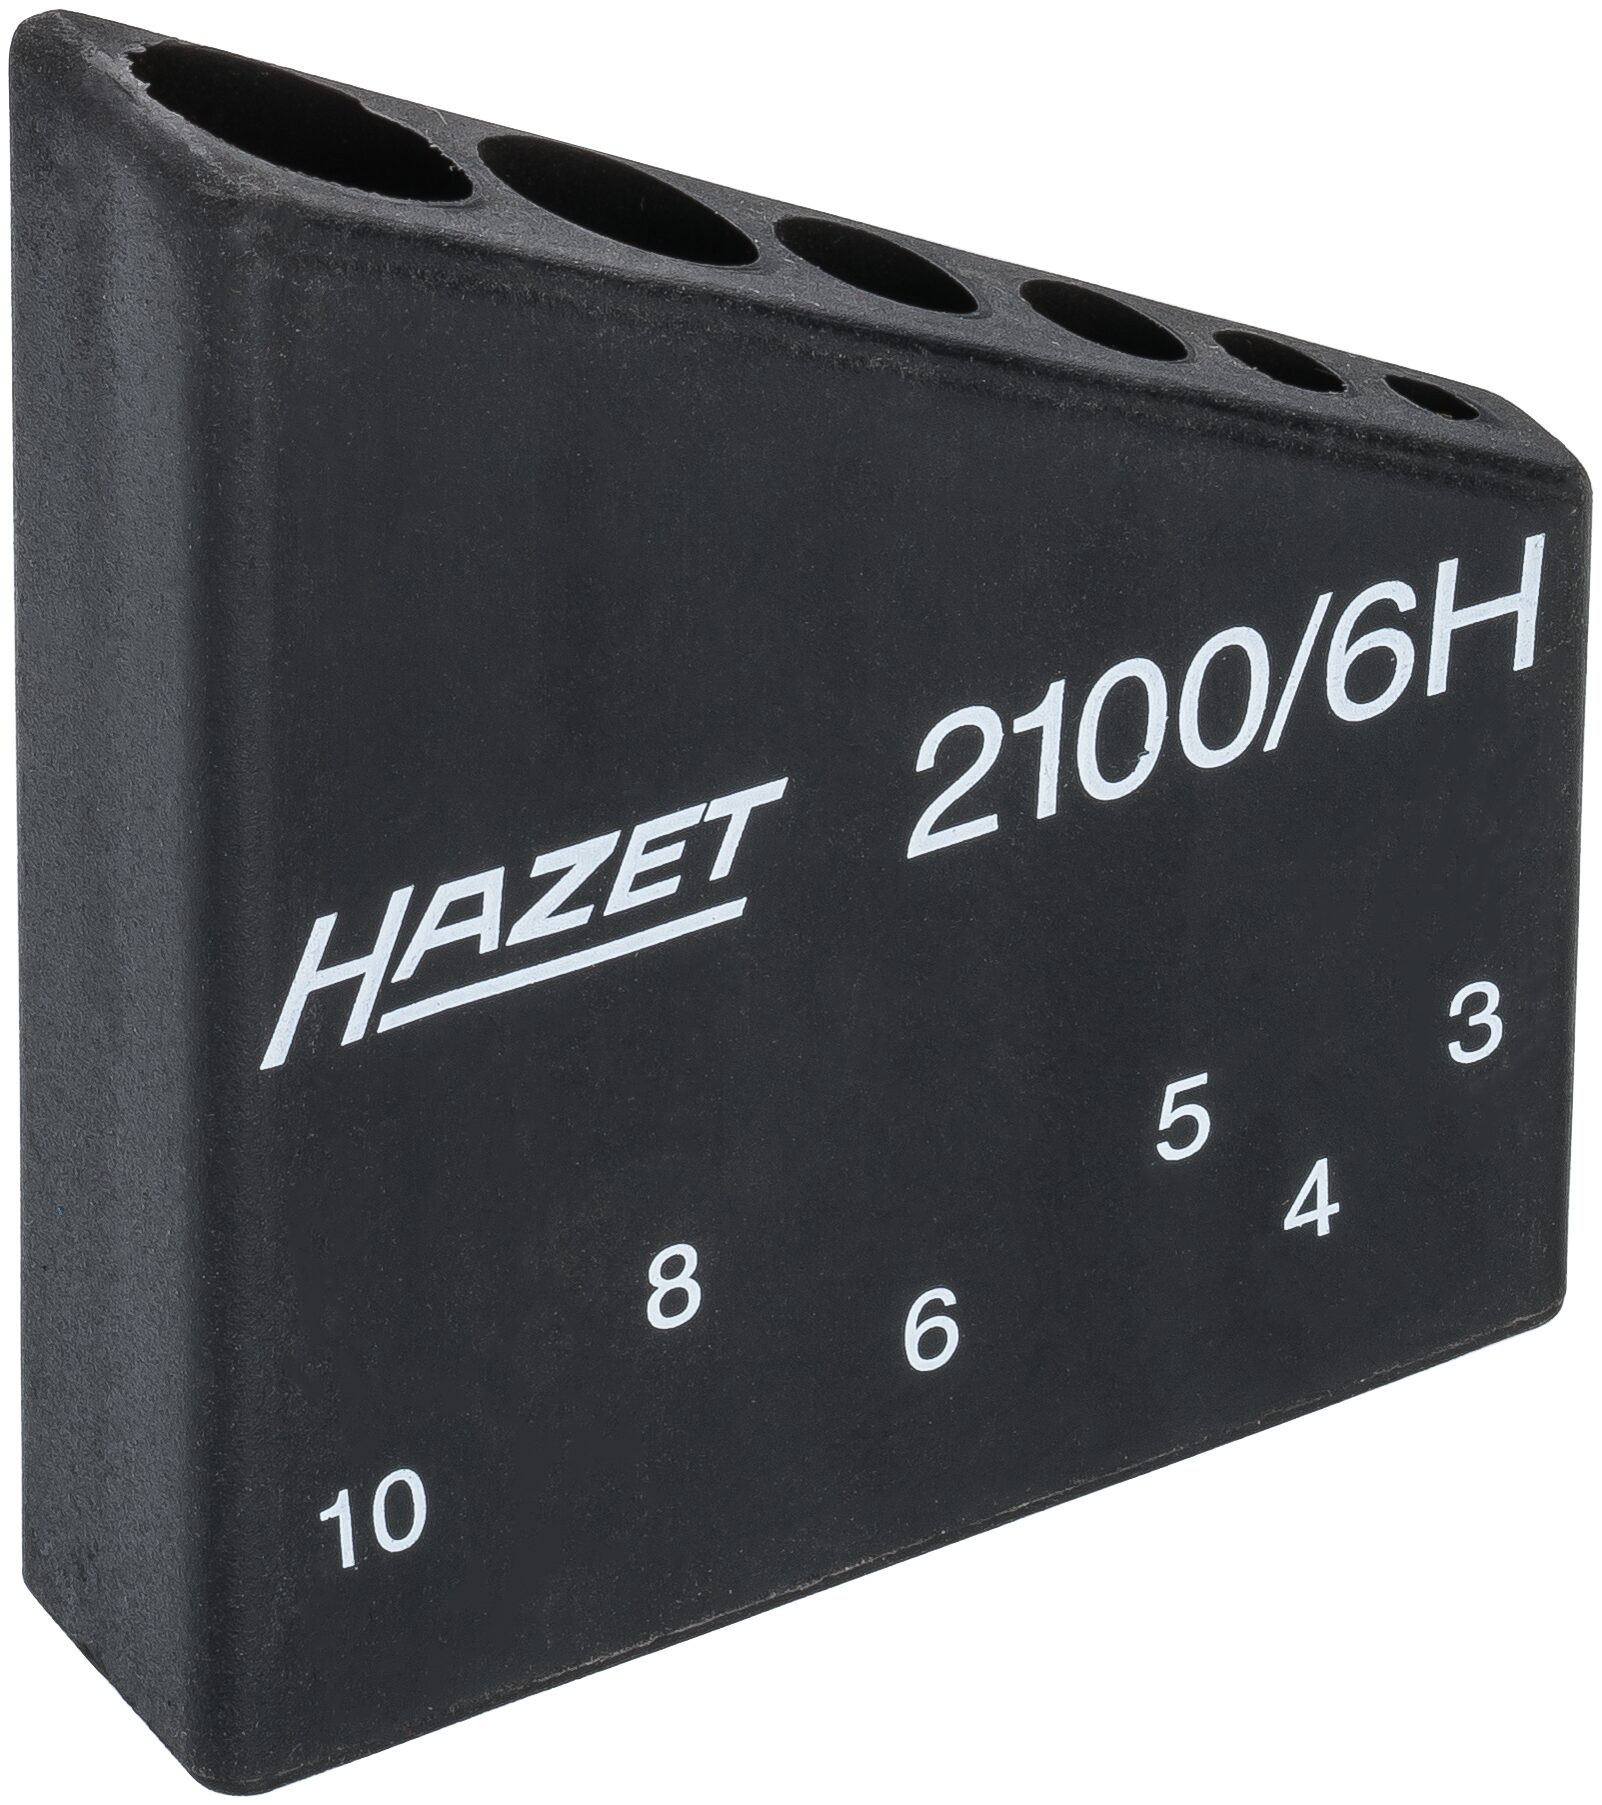 HAZET Werkzeug Halter 2100/6HL